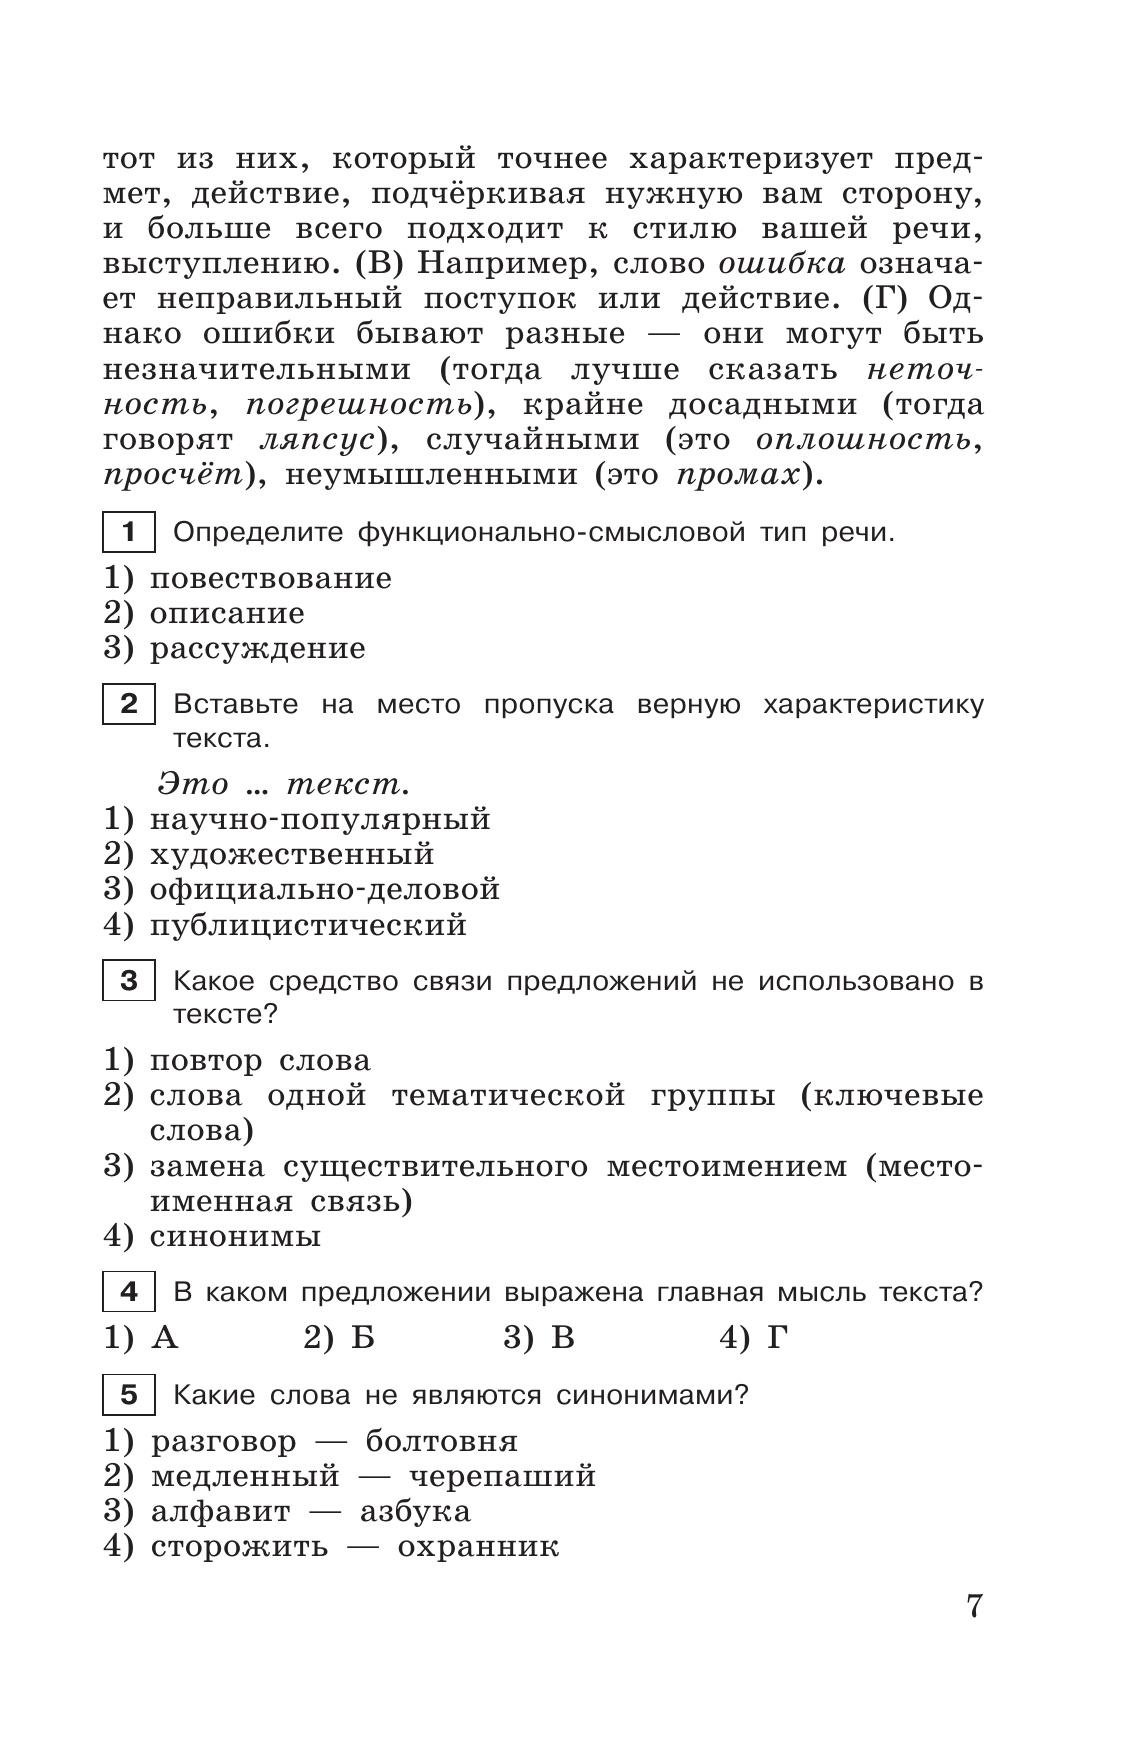 Тестовые задания по русскому языку. 6 класс. 7